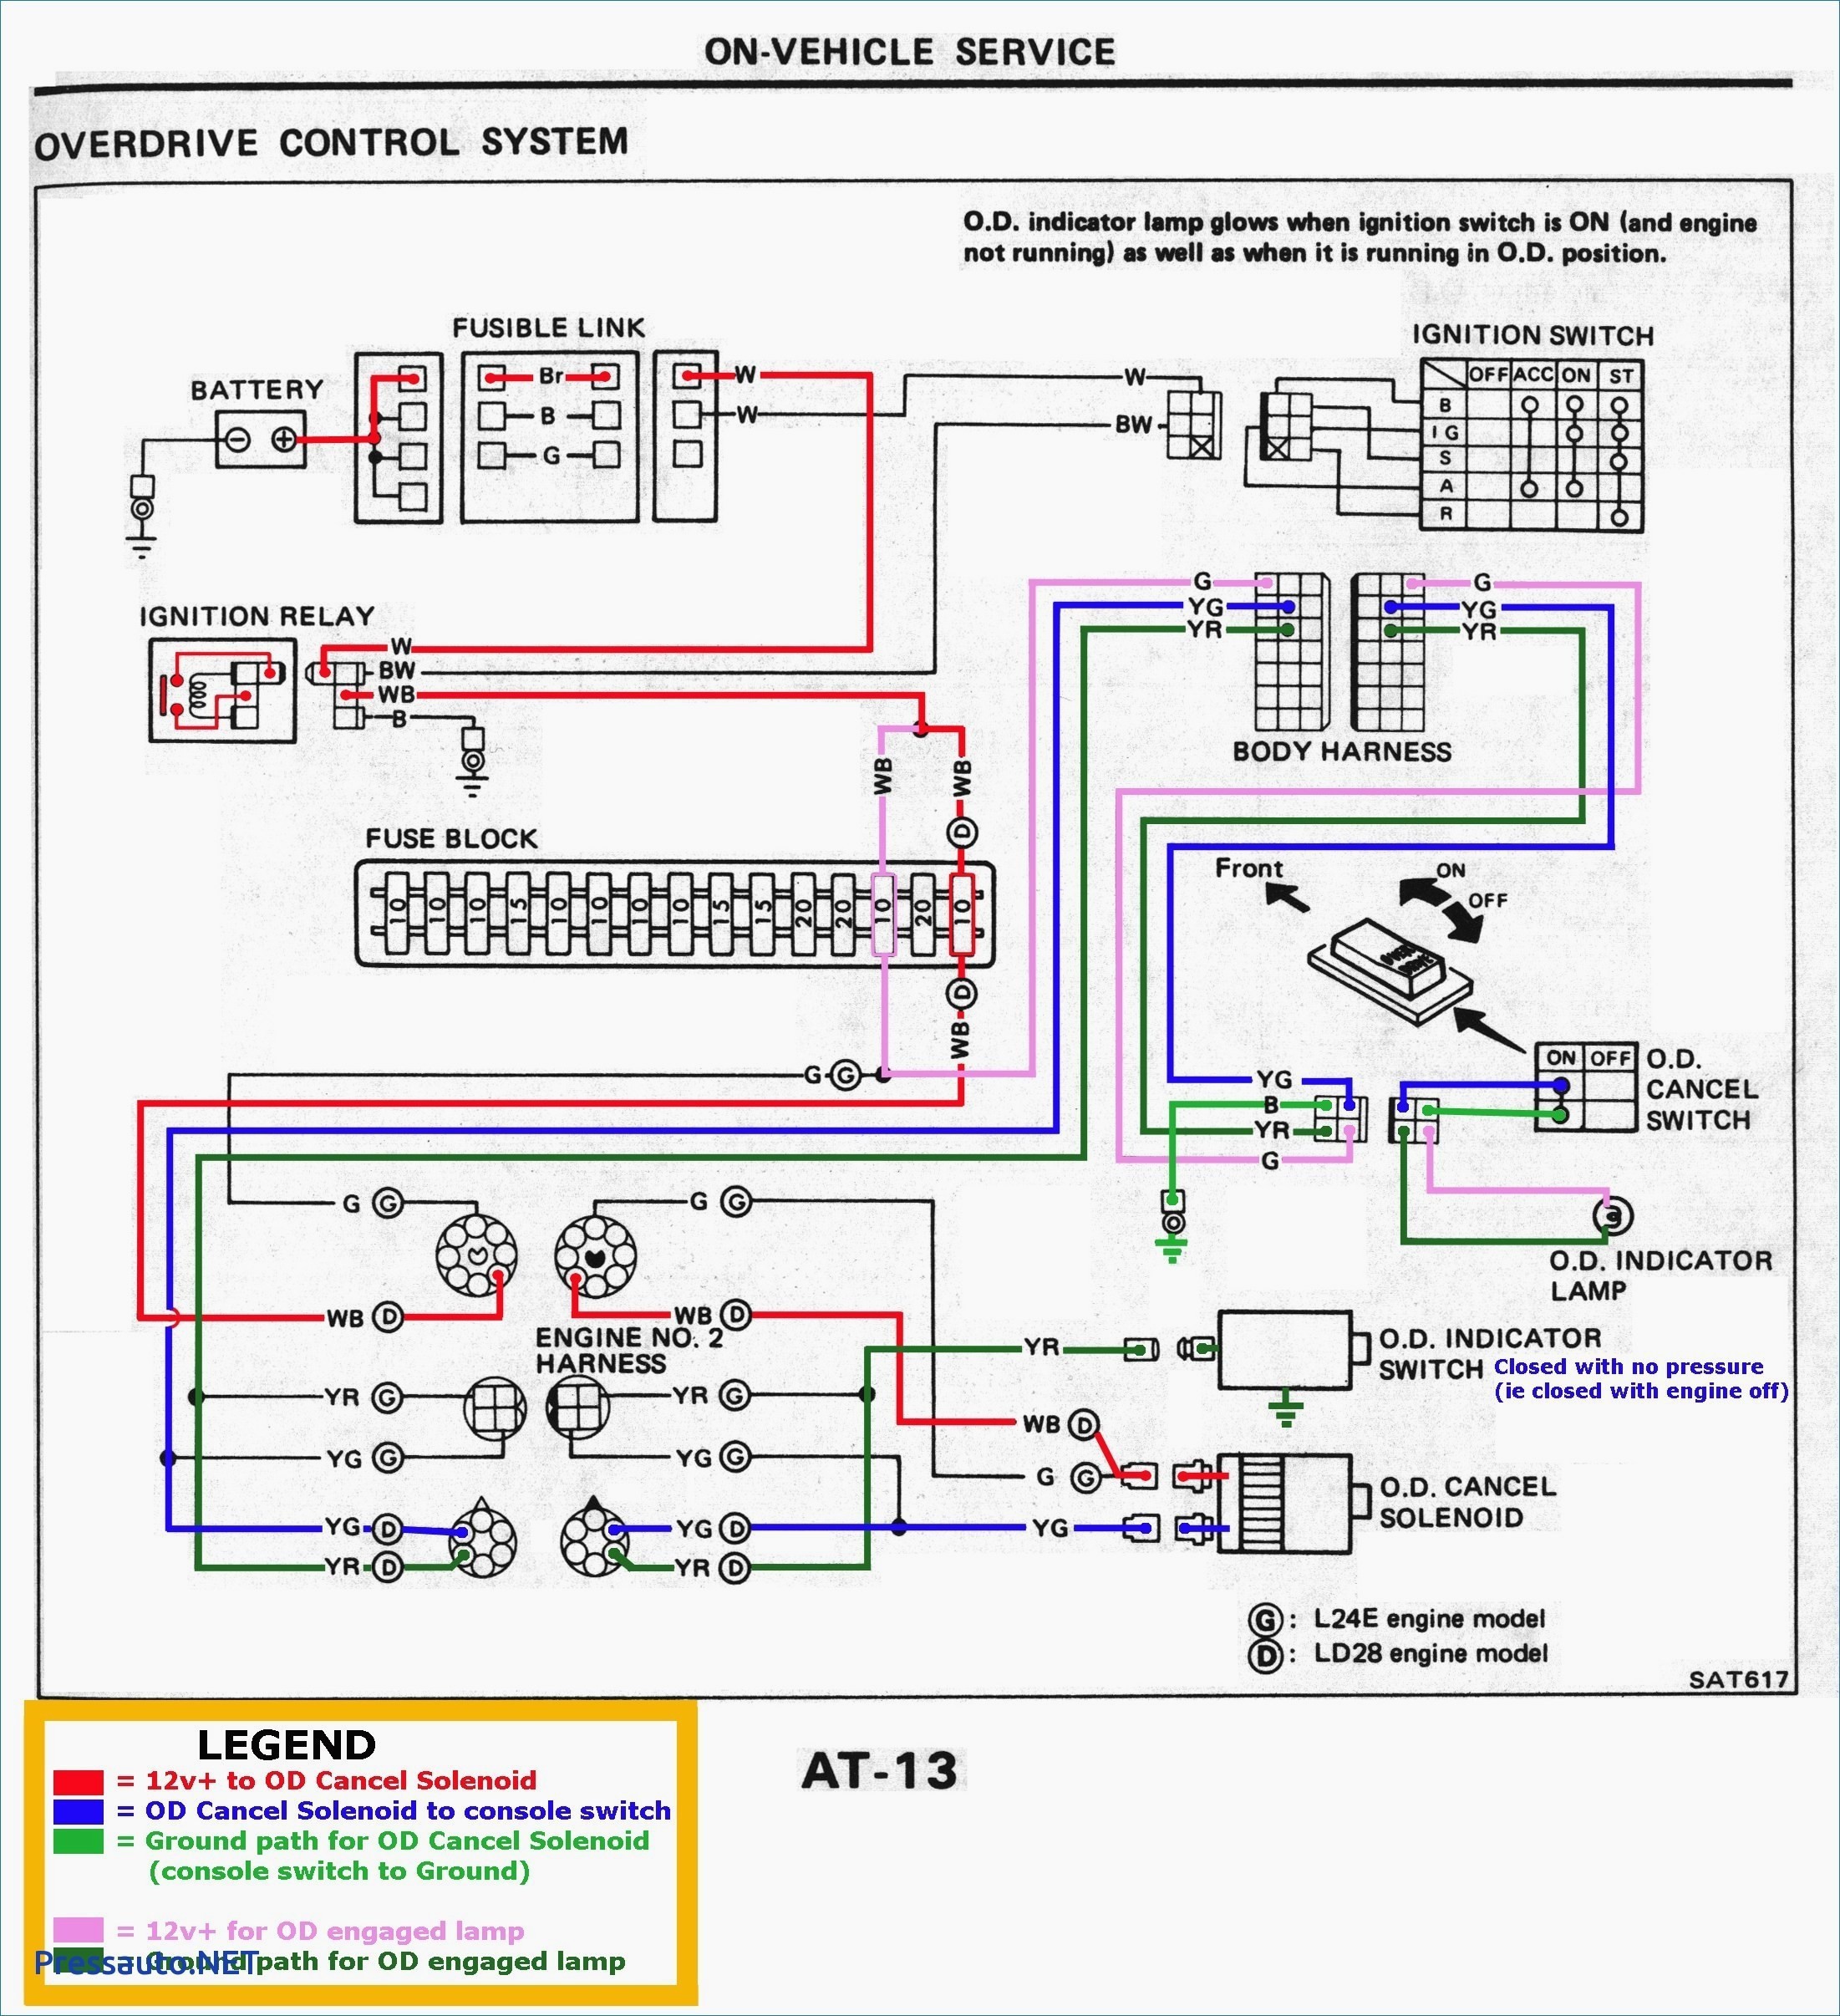 Motor Engine Diagram Leeson Motor Wiring Diagram Wiring Diagram for You Of Motor Engine Diagram